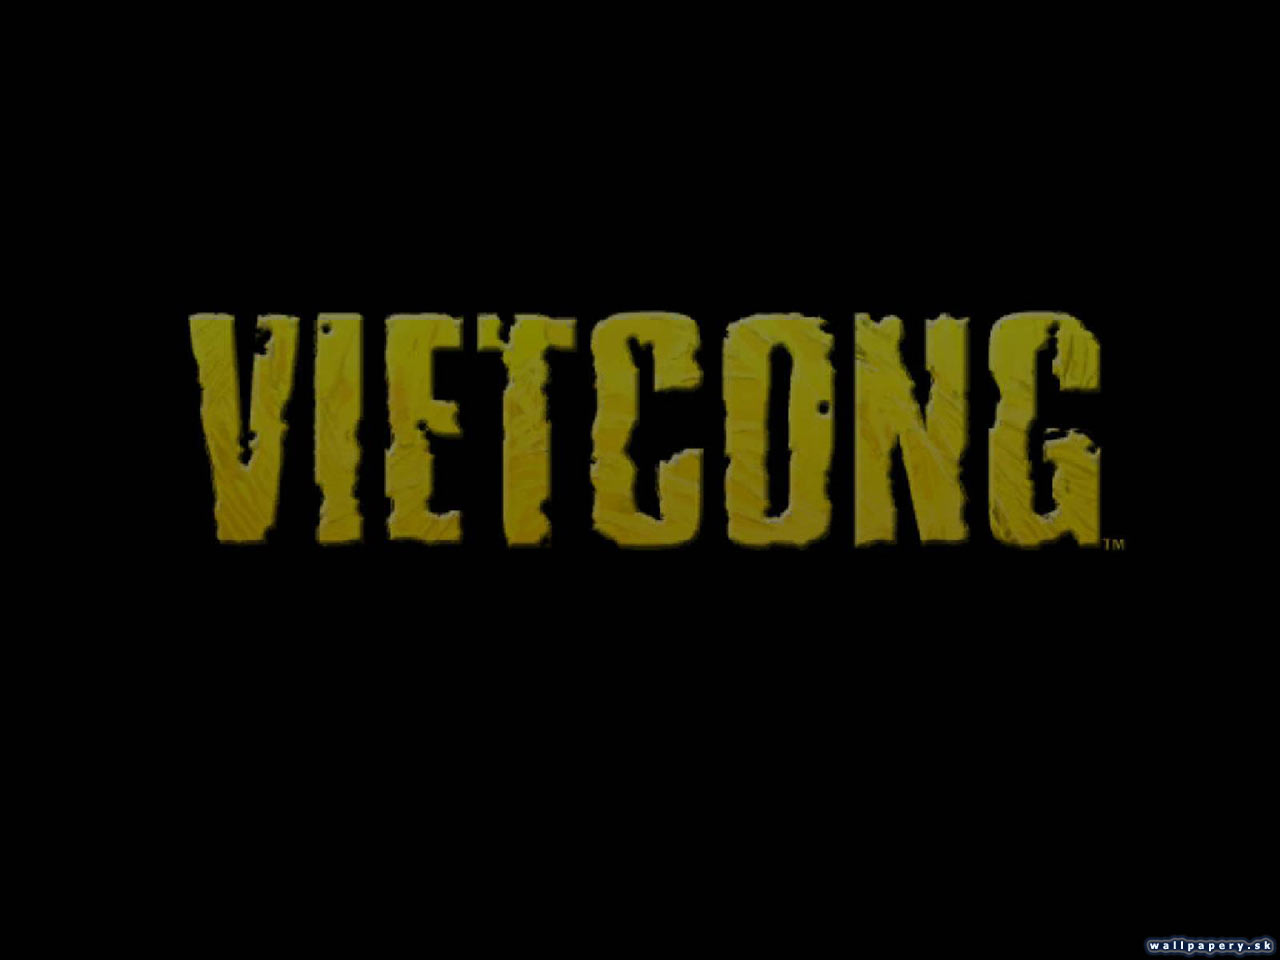 Vietcong - wallpaper 10